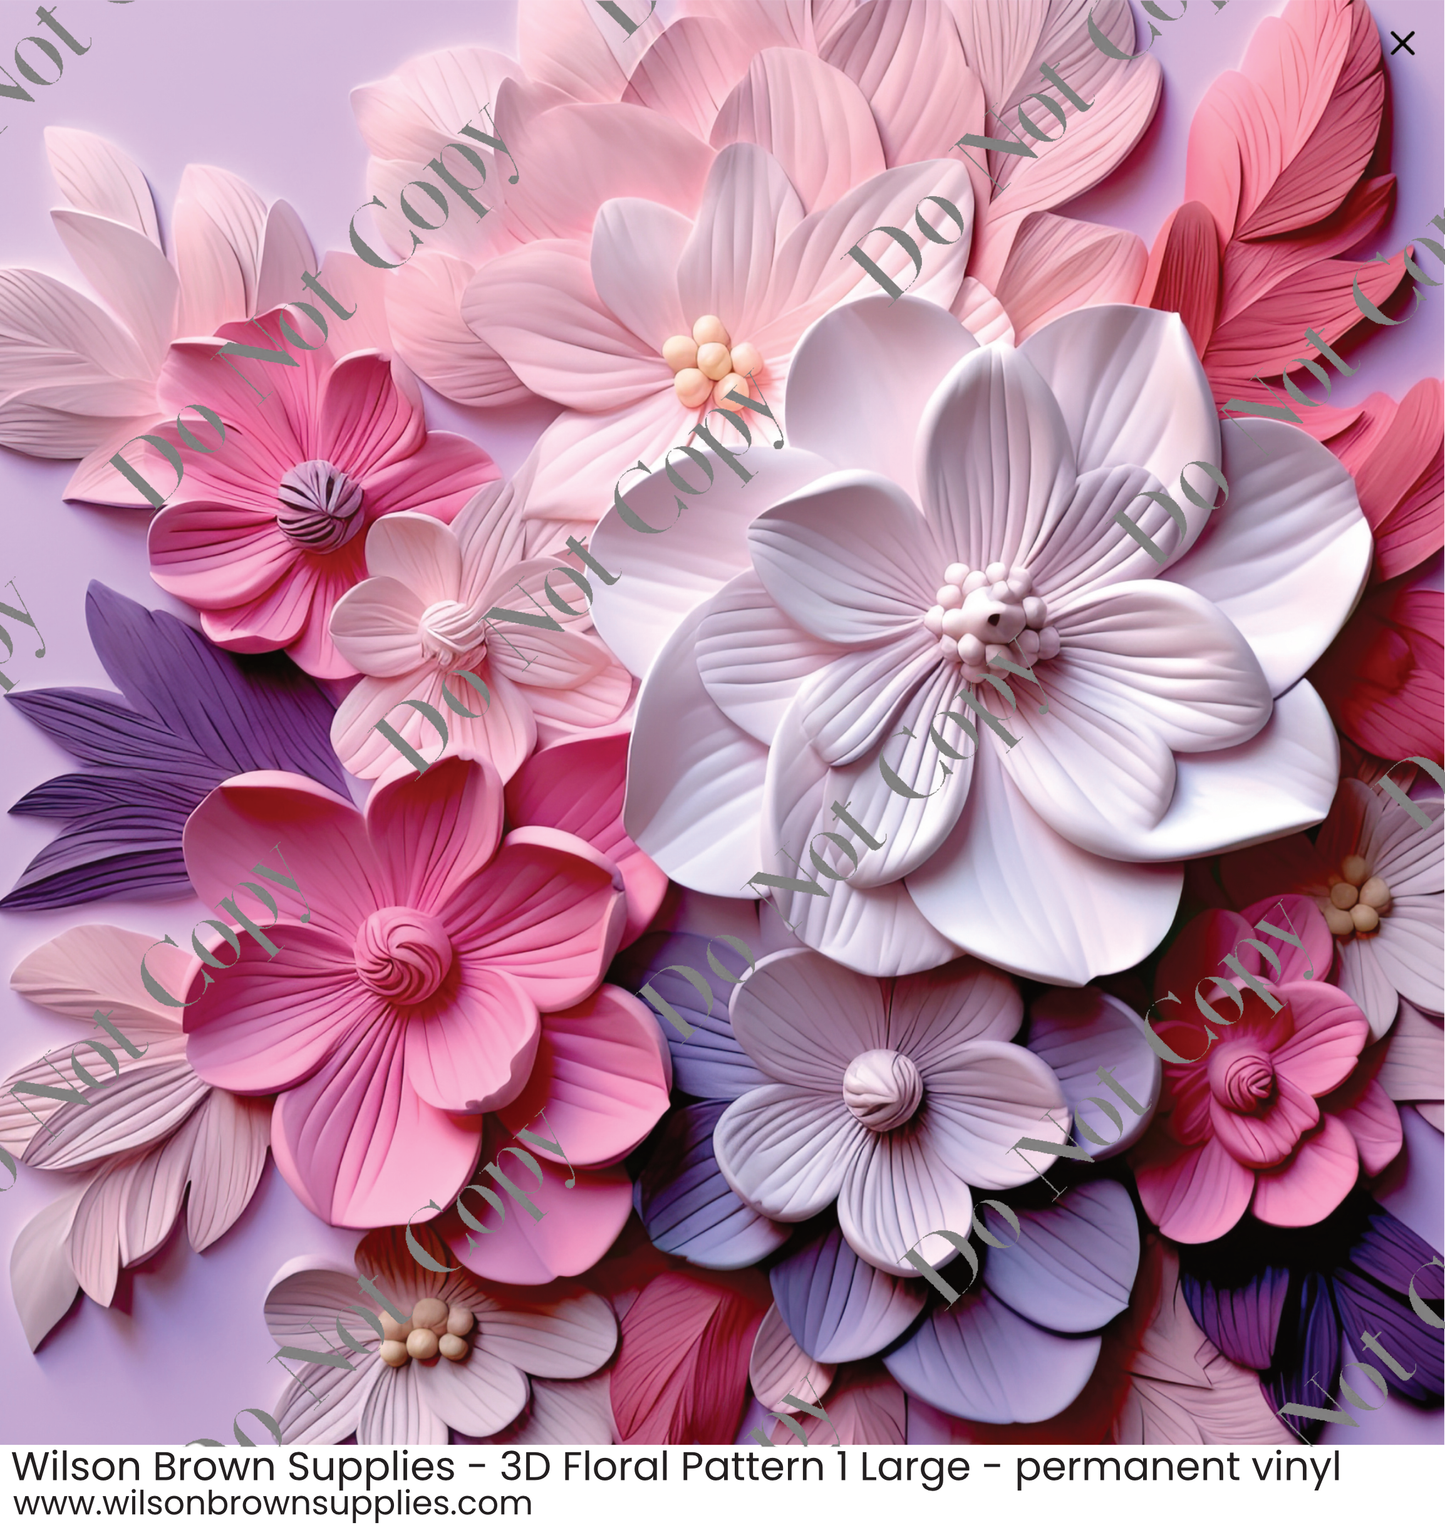 Patterned Vinyl - 3D Floral Pattern 1